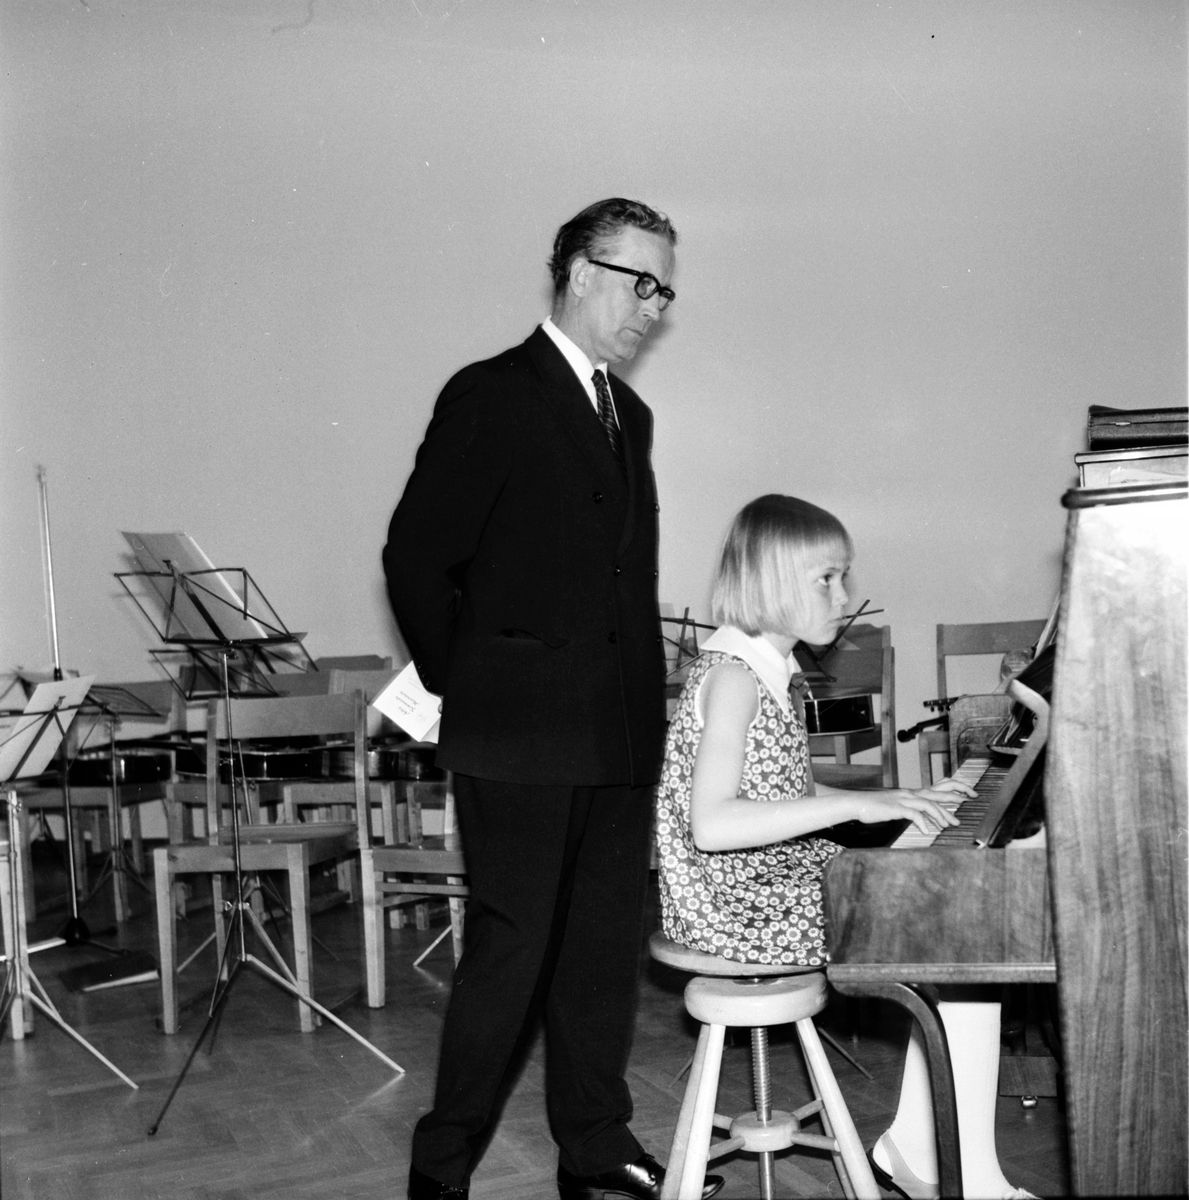 Arbrå,
Musikskolans avslutning, Birger Näslund med elev.
Juni 1969